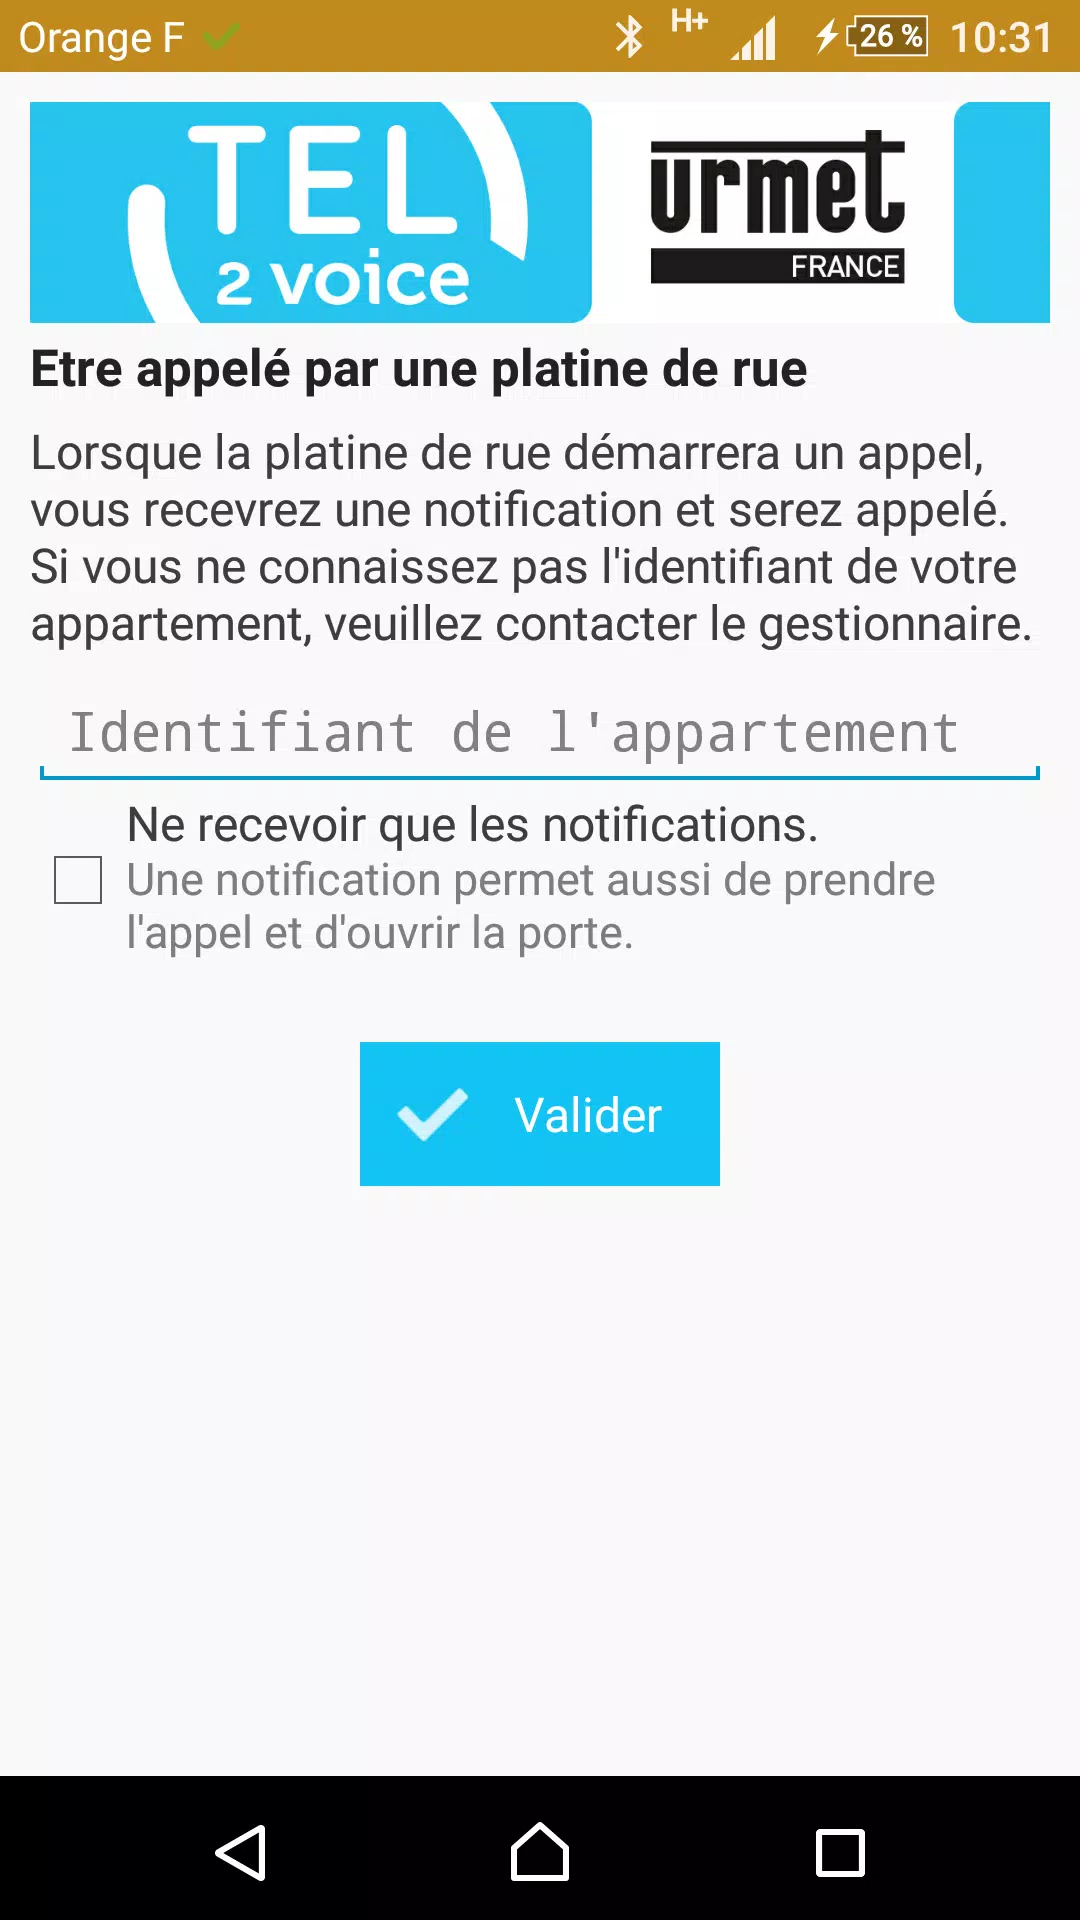 Tel2Voice Utilisateur APK for Android Download